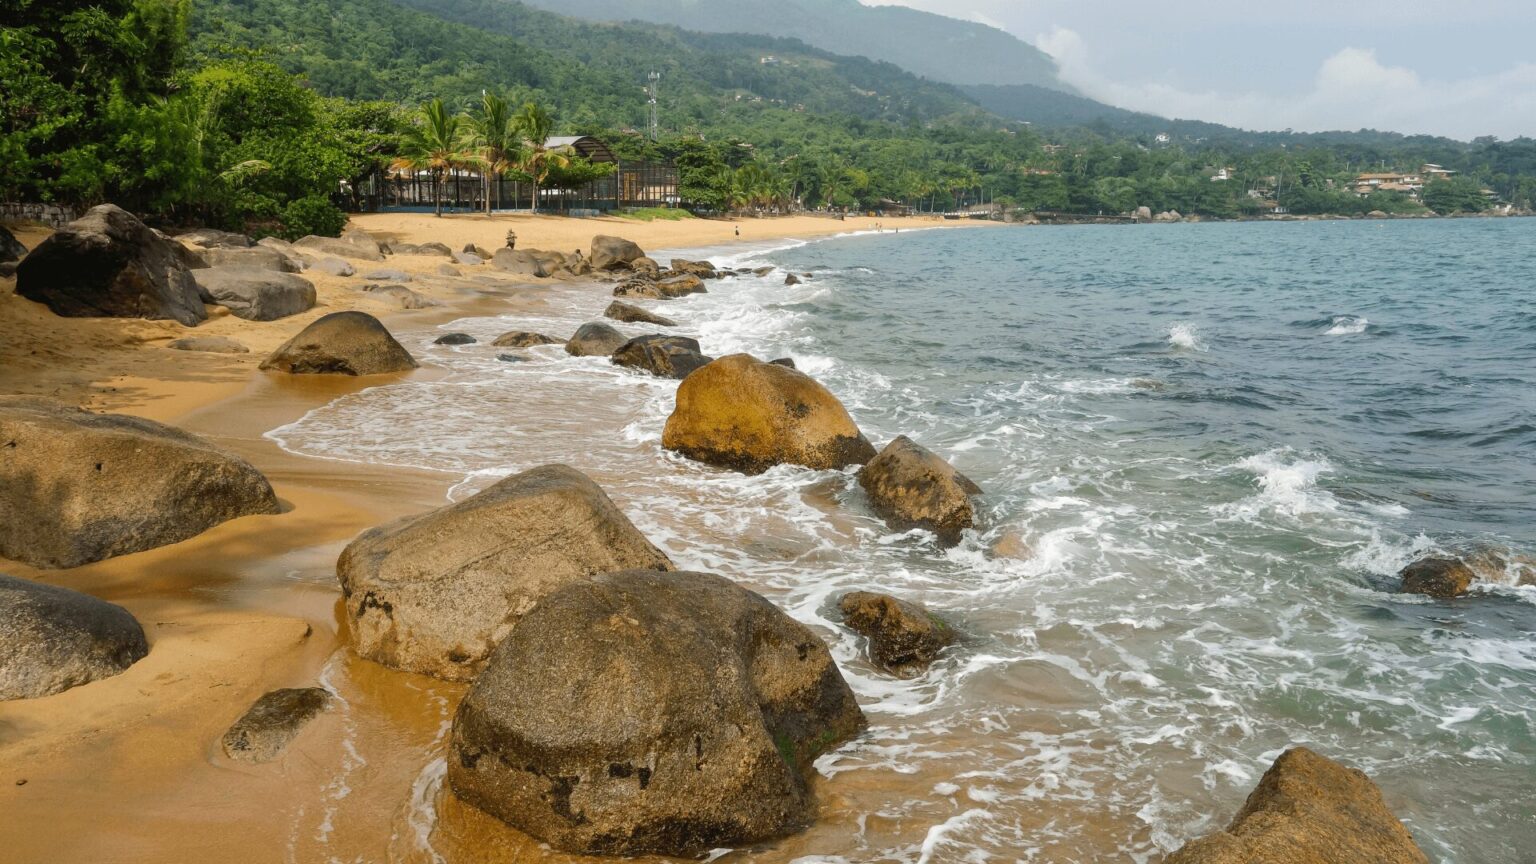 Uma praia serena com rochas e água cristalina, perfeita para uma escapada relaxante.